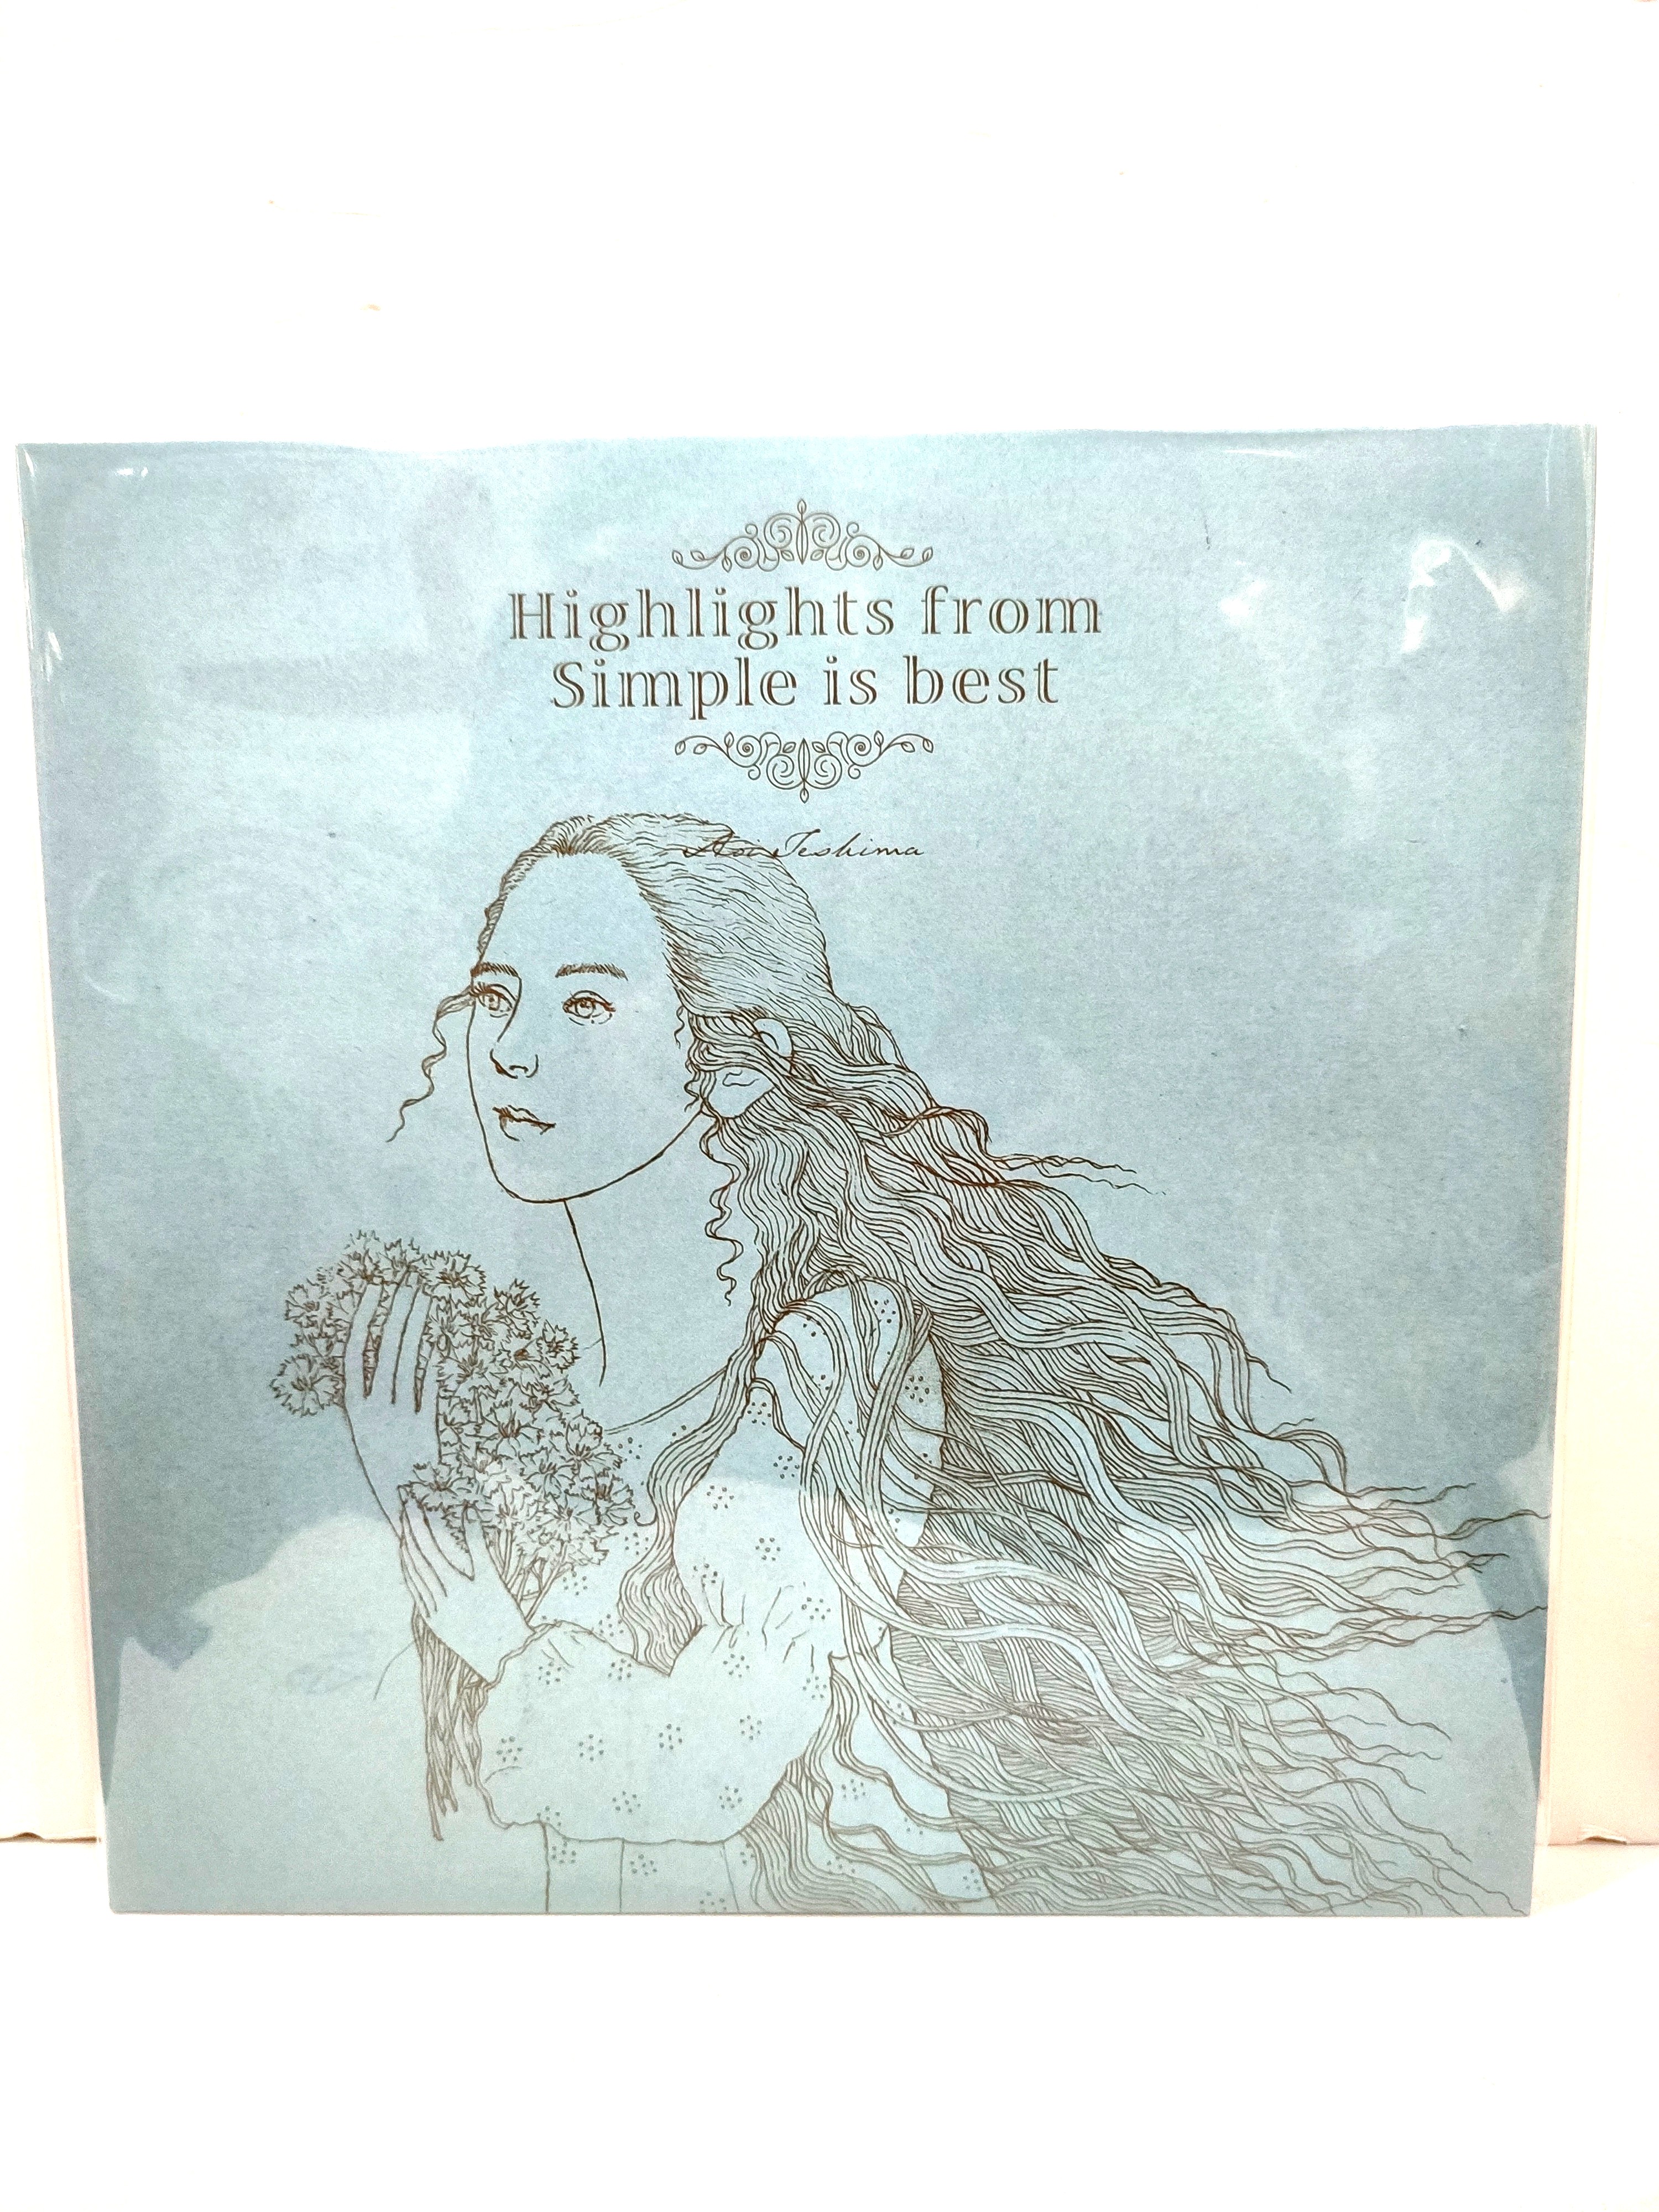 手嶌葵「Highlights from Simple is best」LP - 邦楽